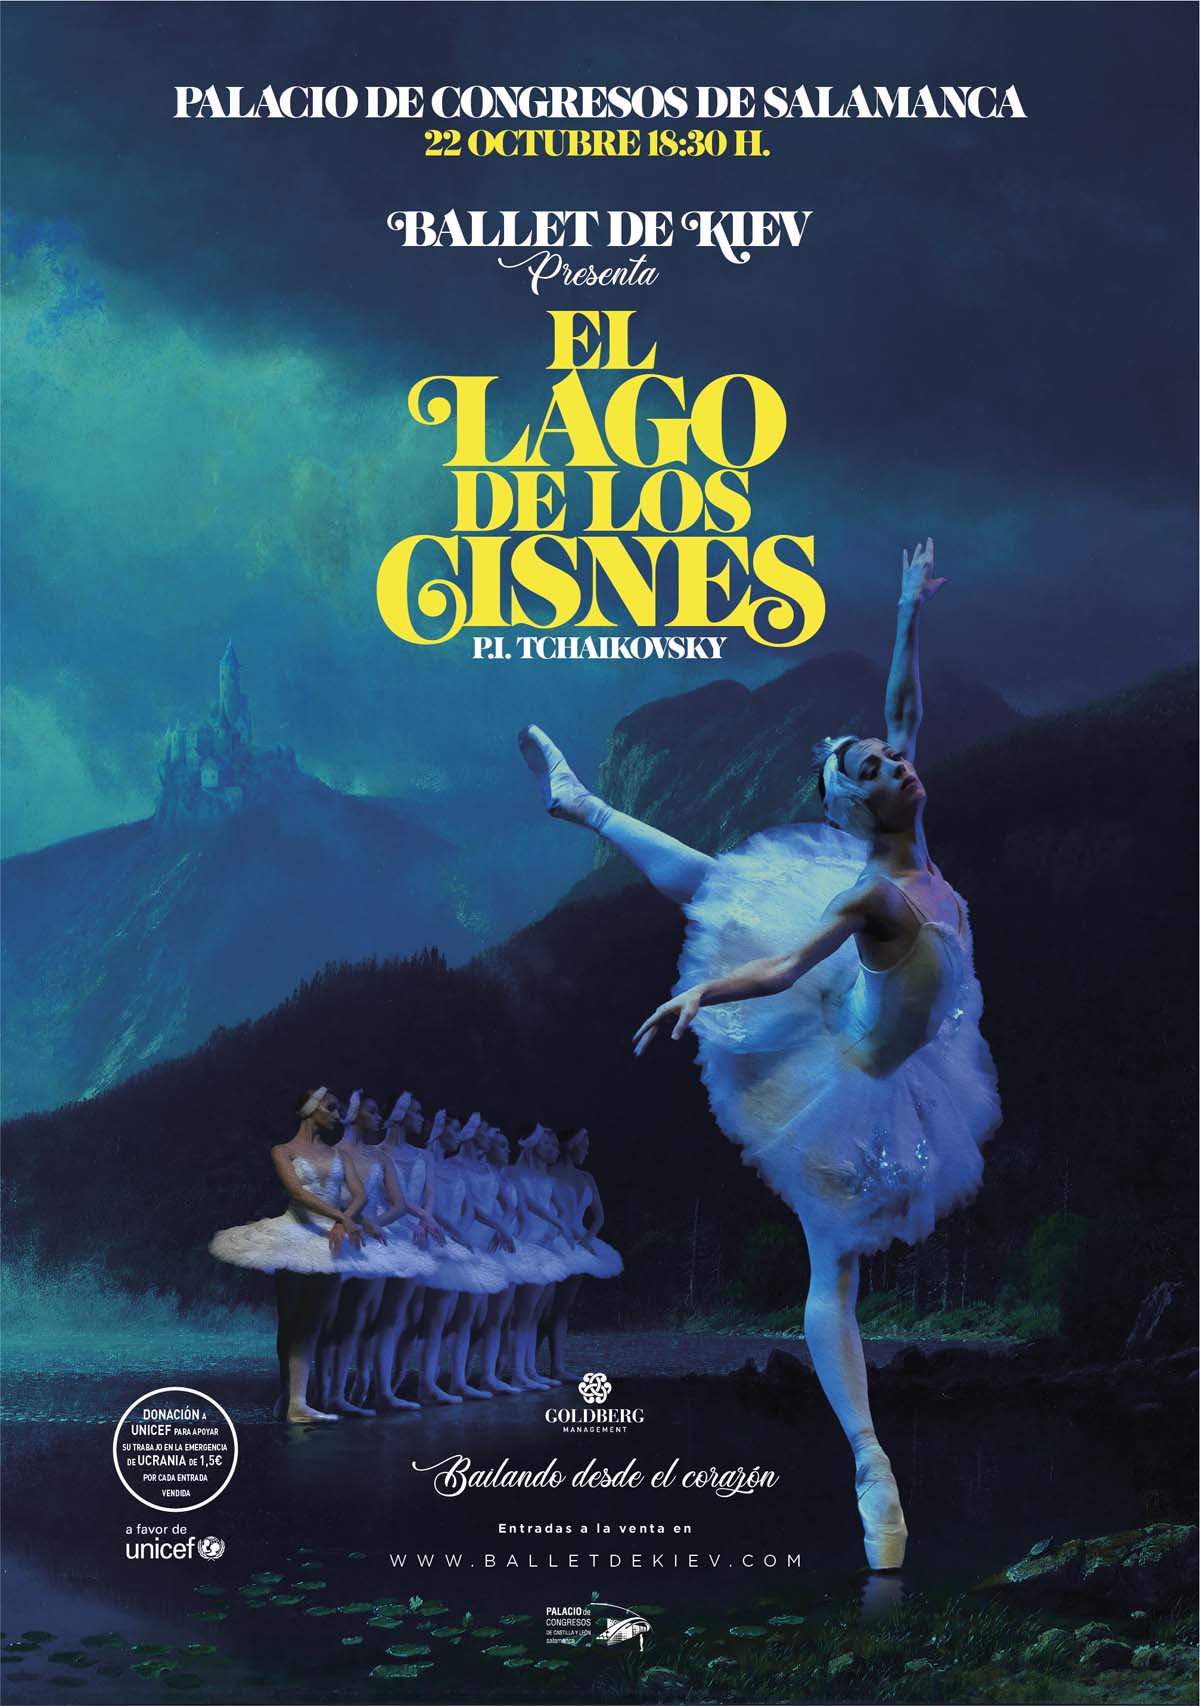 Ballet de Kiev en Salamanca El Lago de los Cisnes en el Palacio de Congresos de Salamanca